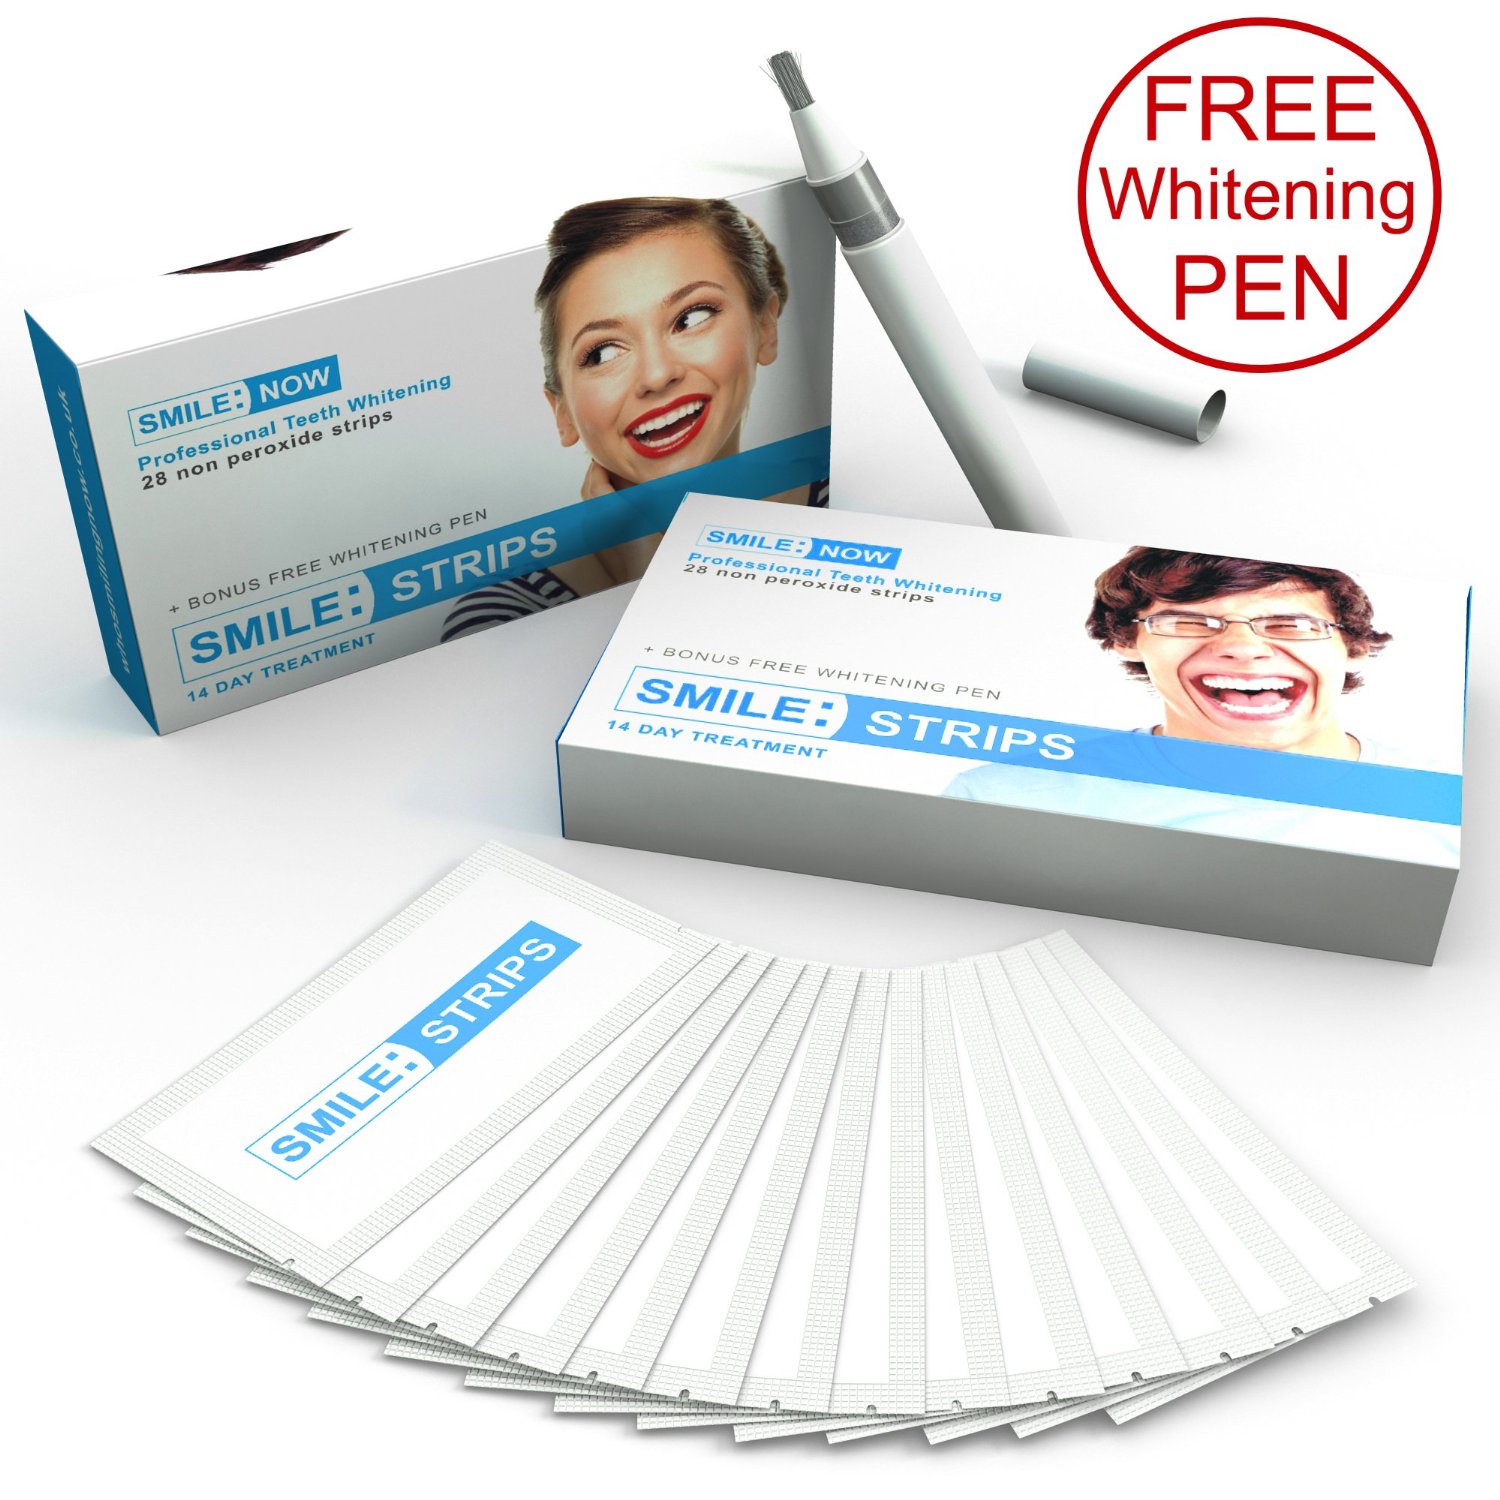 Teeth whitening strips plus BONUS FREE Whitening Pen